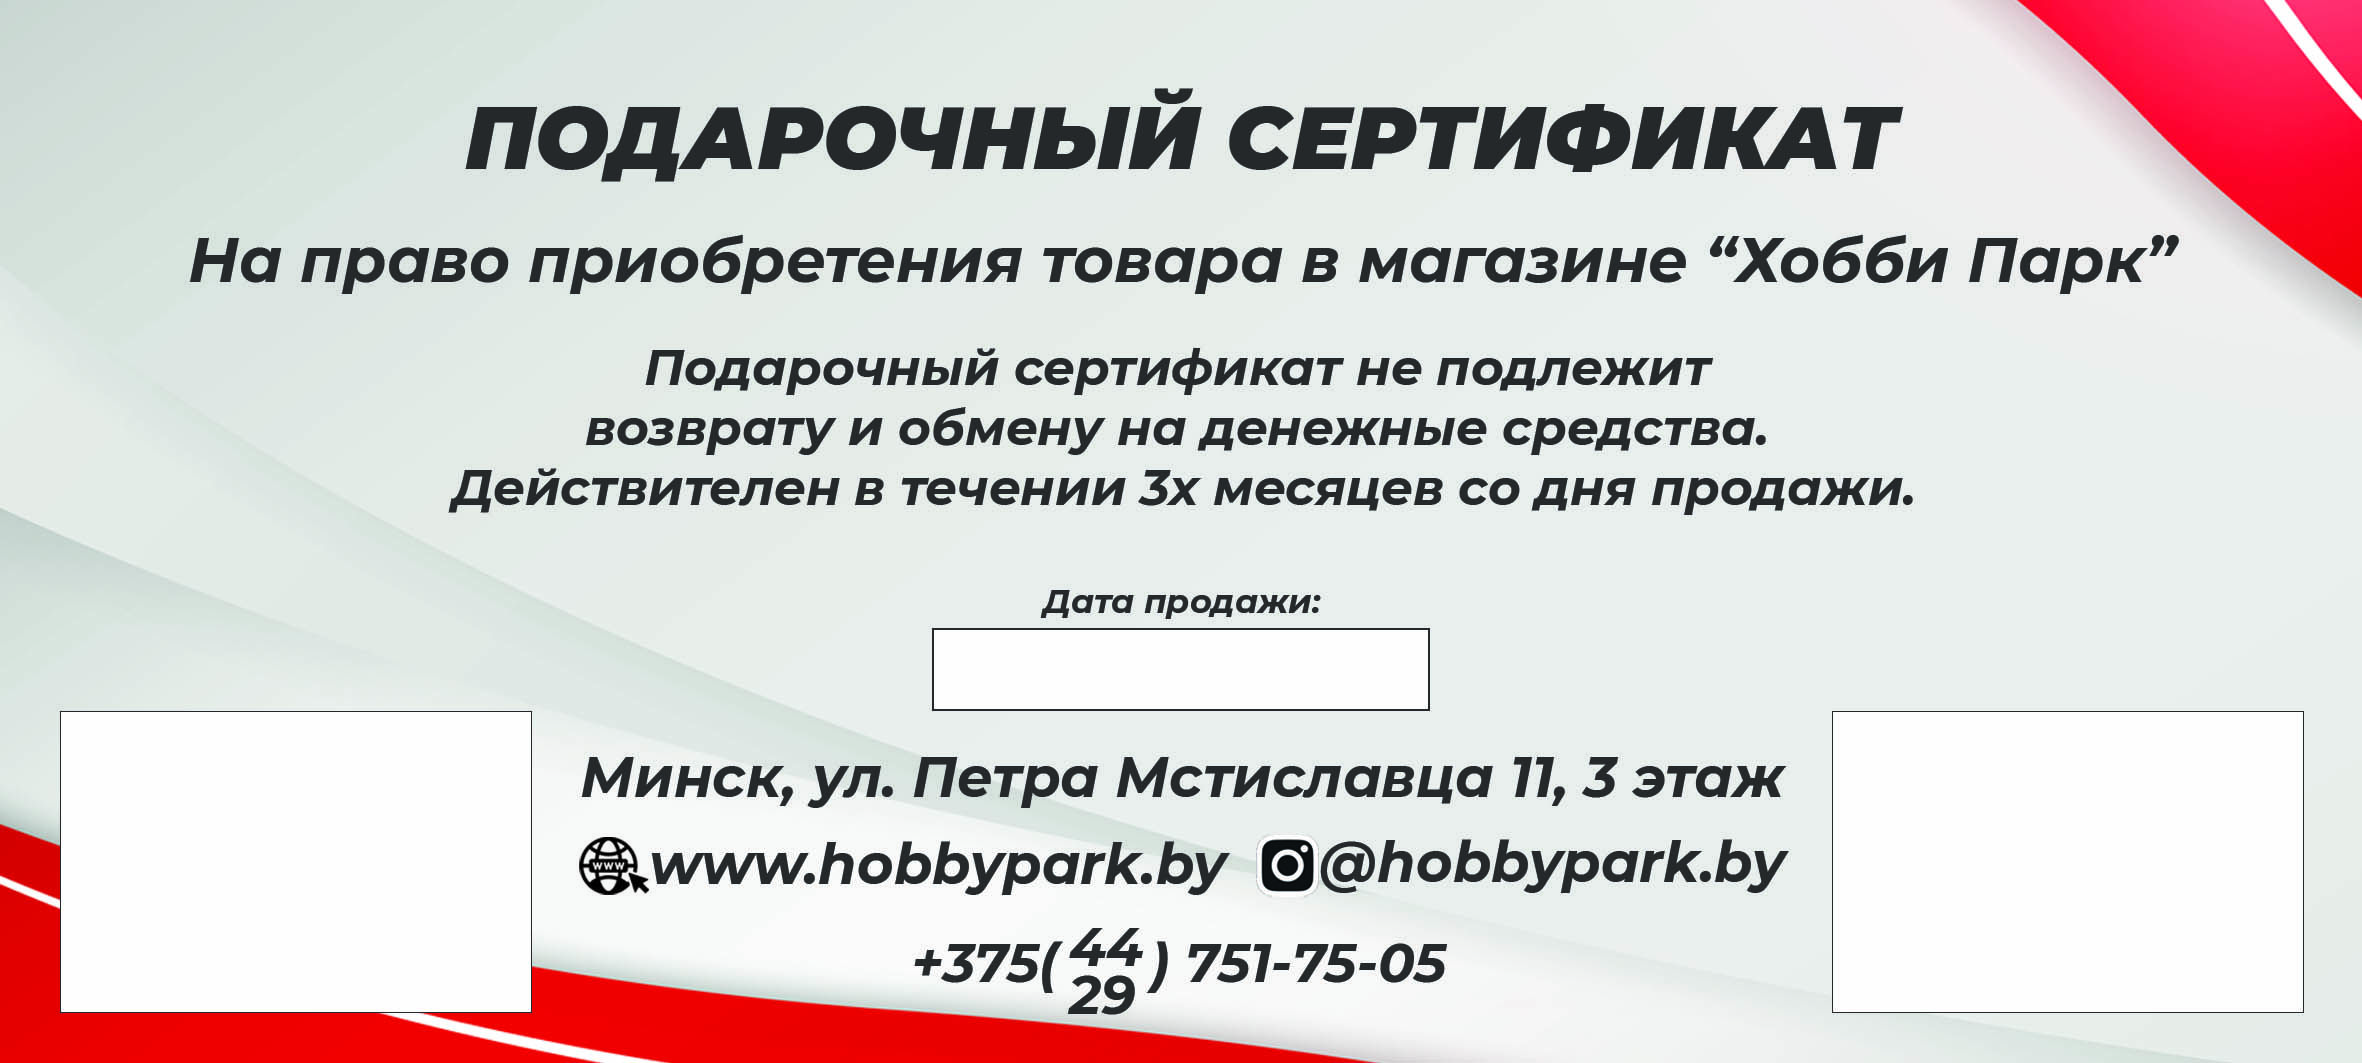 Подарочный сертификат Хобби-Парк на 300 рублей